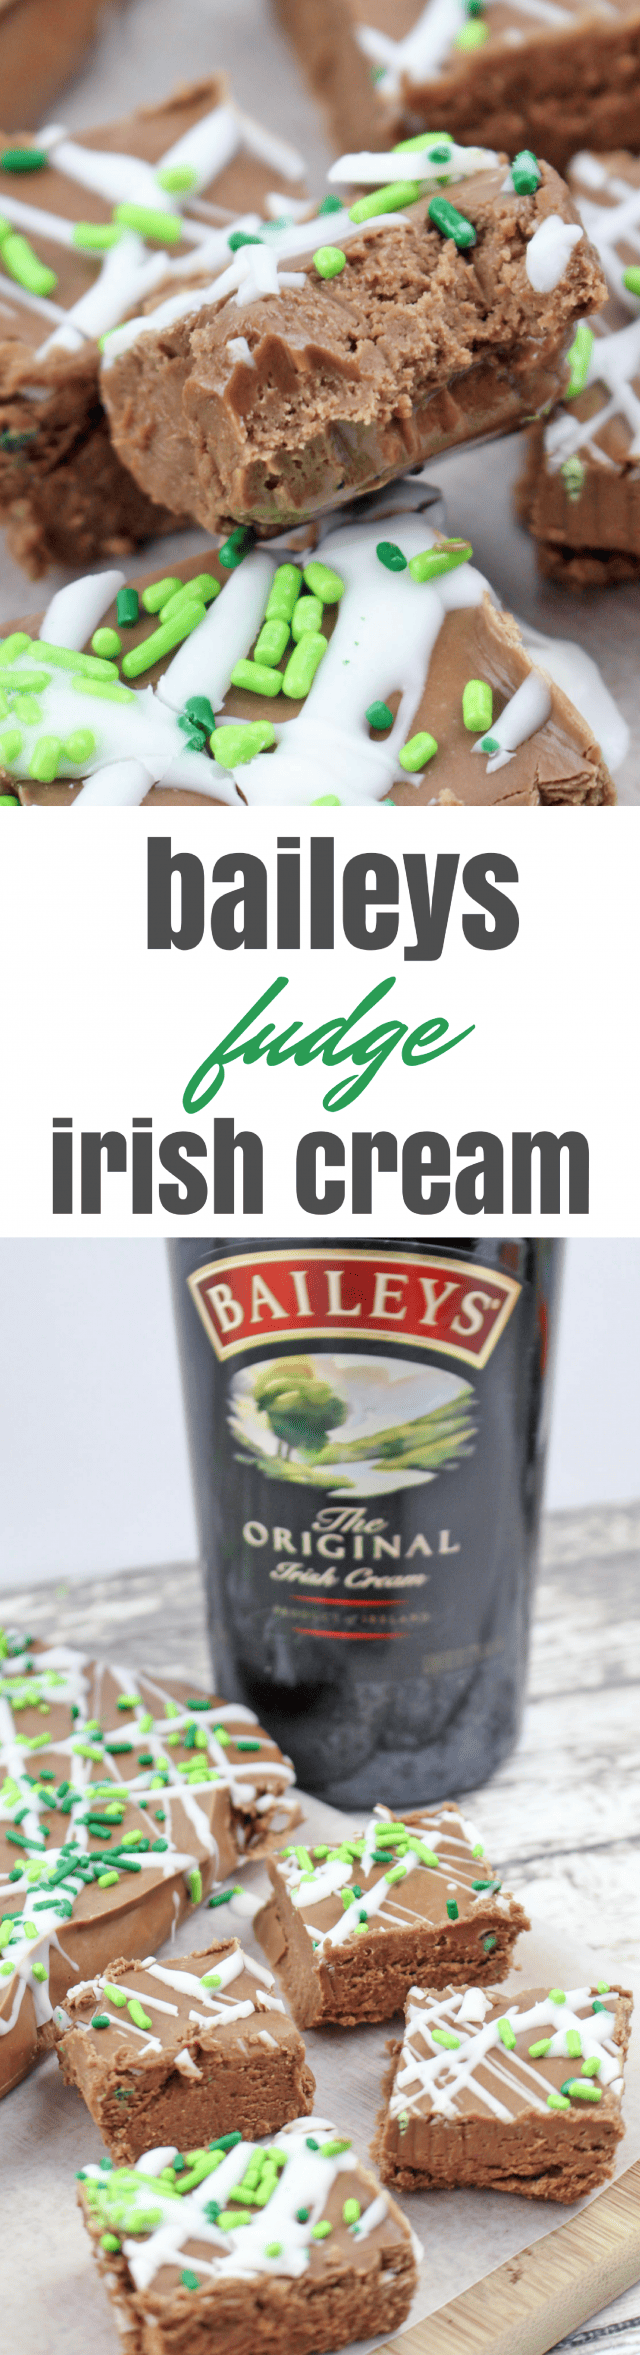 Green Baileys Irish Cream Chocolate Fudge Recipe